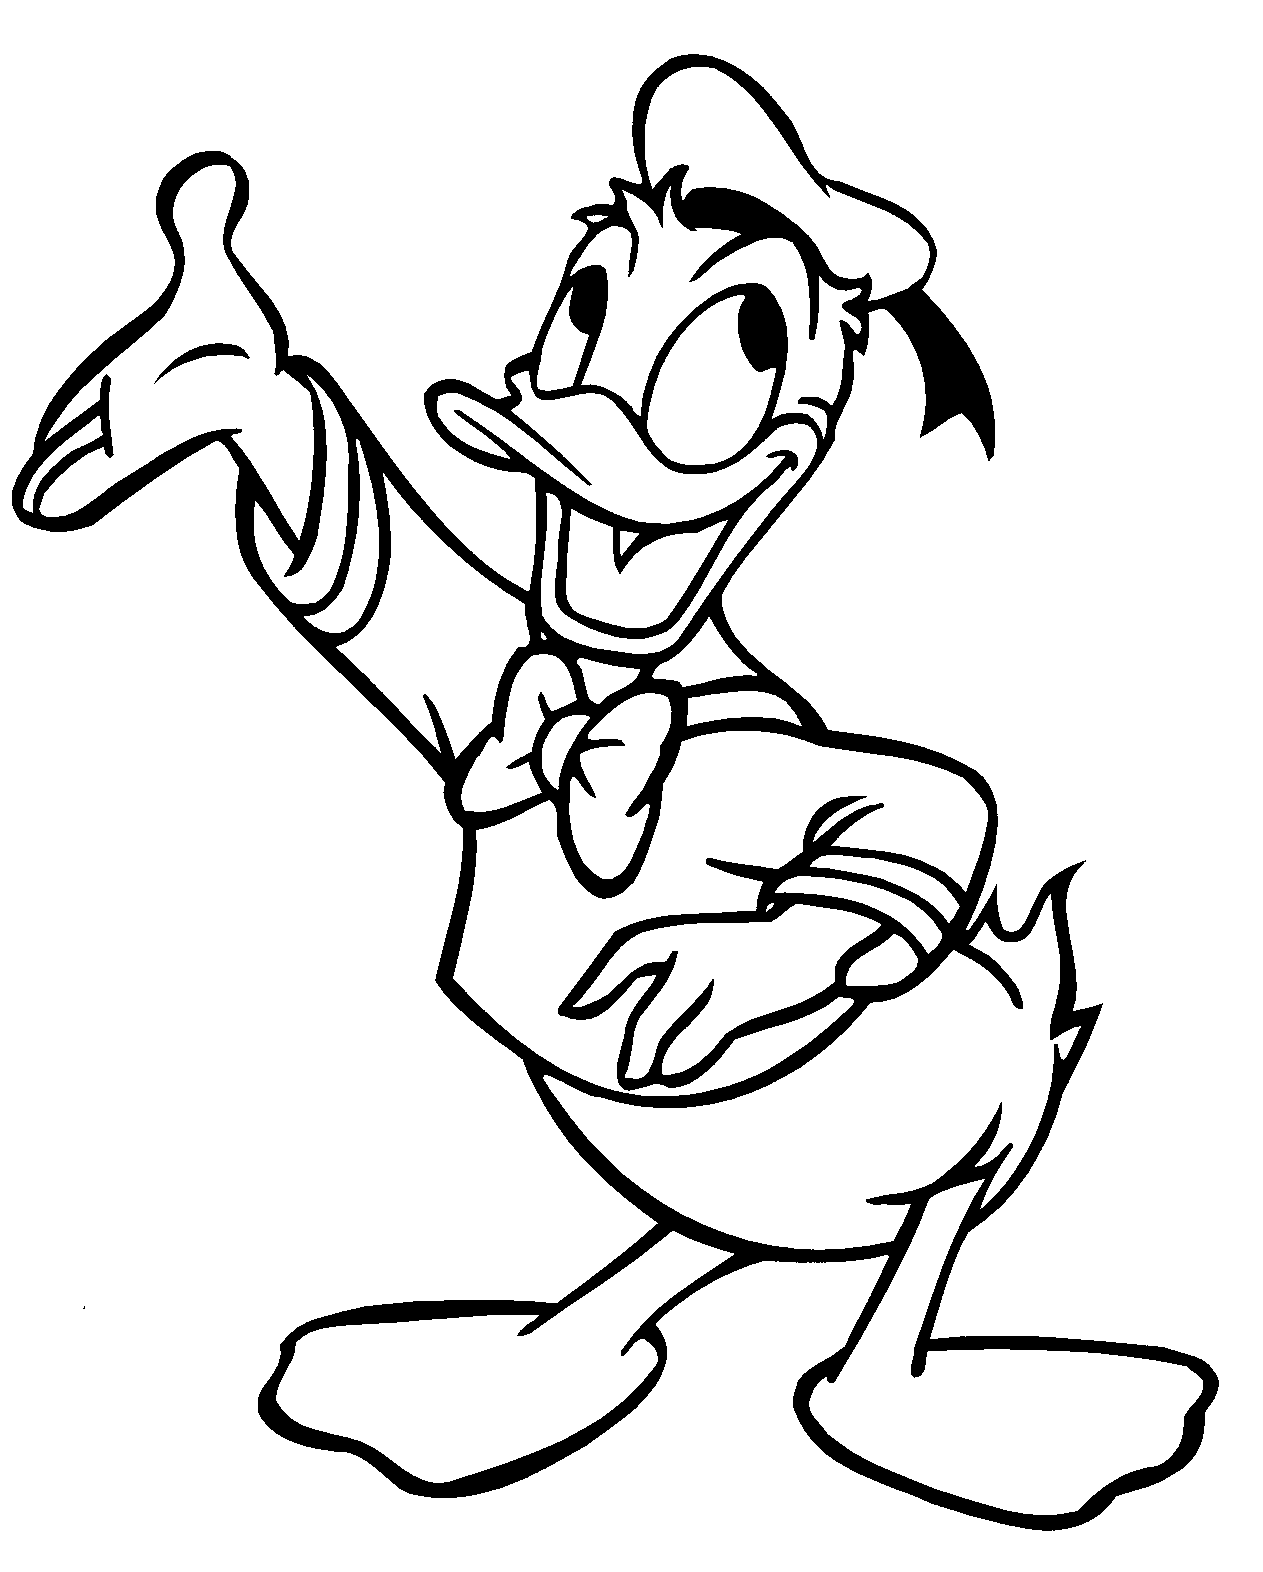 Dessins Gratuits à Colorier - Coloriage Donald Duck à imprimer